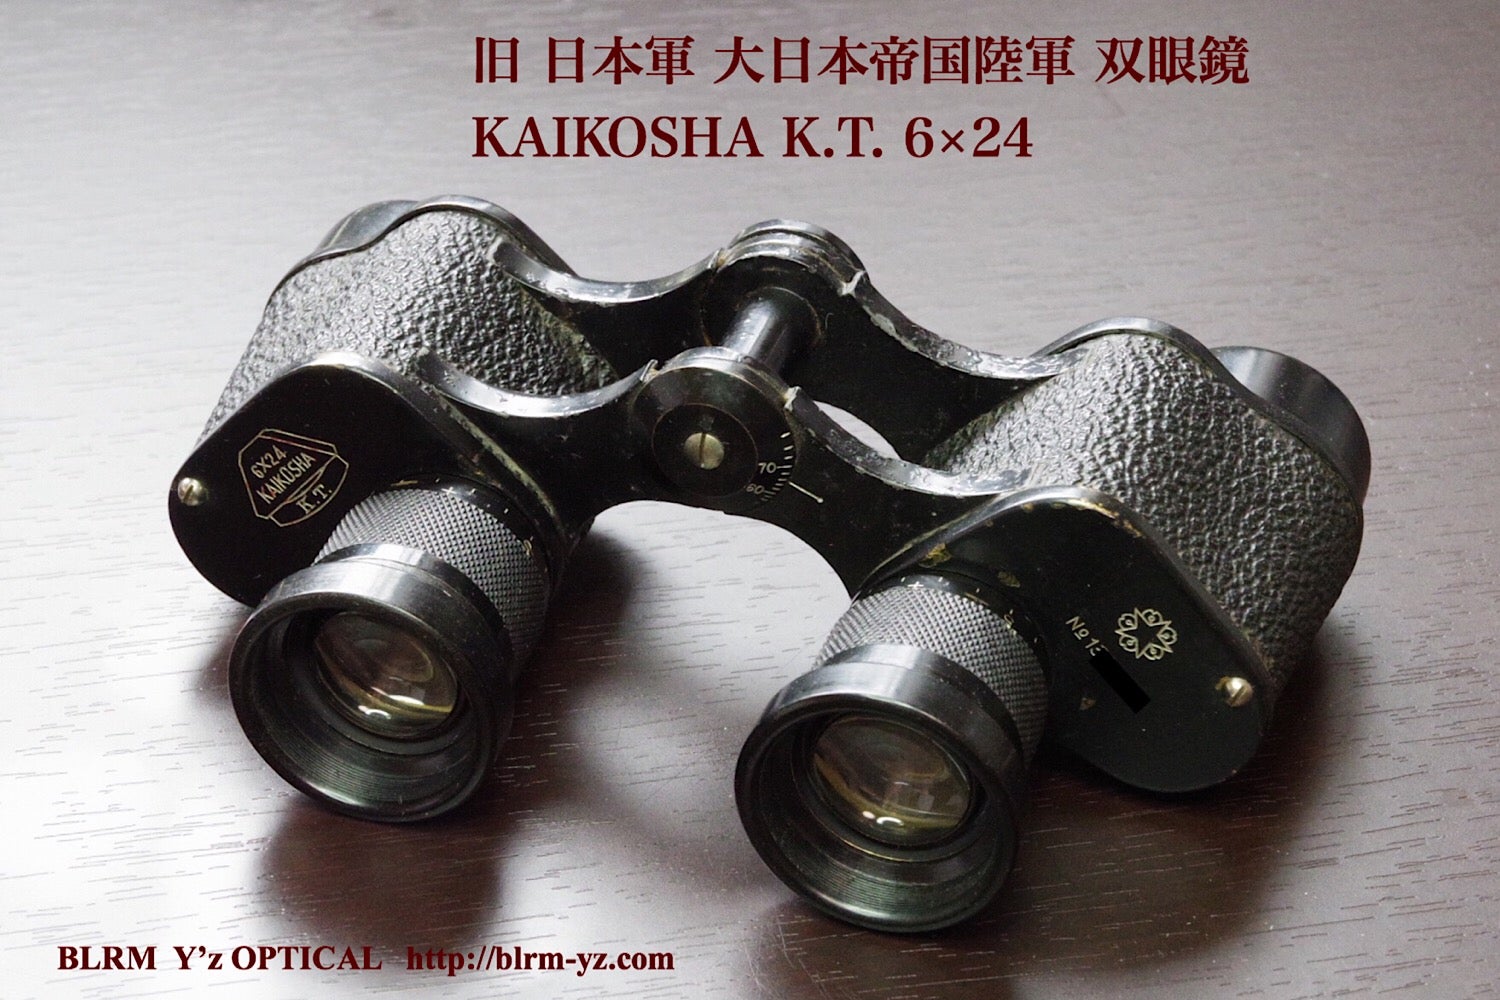 KAIKOSYA K.T. 6×24 旧 日本軍 大日本帝国陸軍 偕行社 双眼鏡